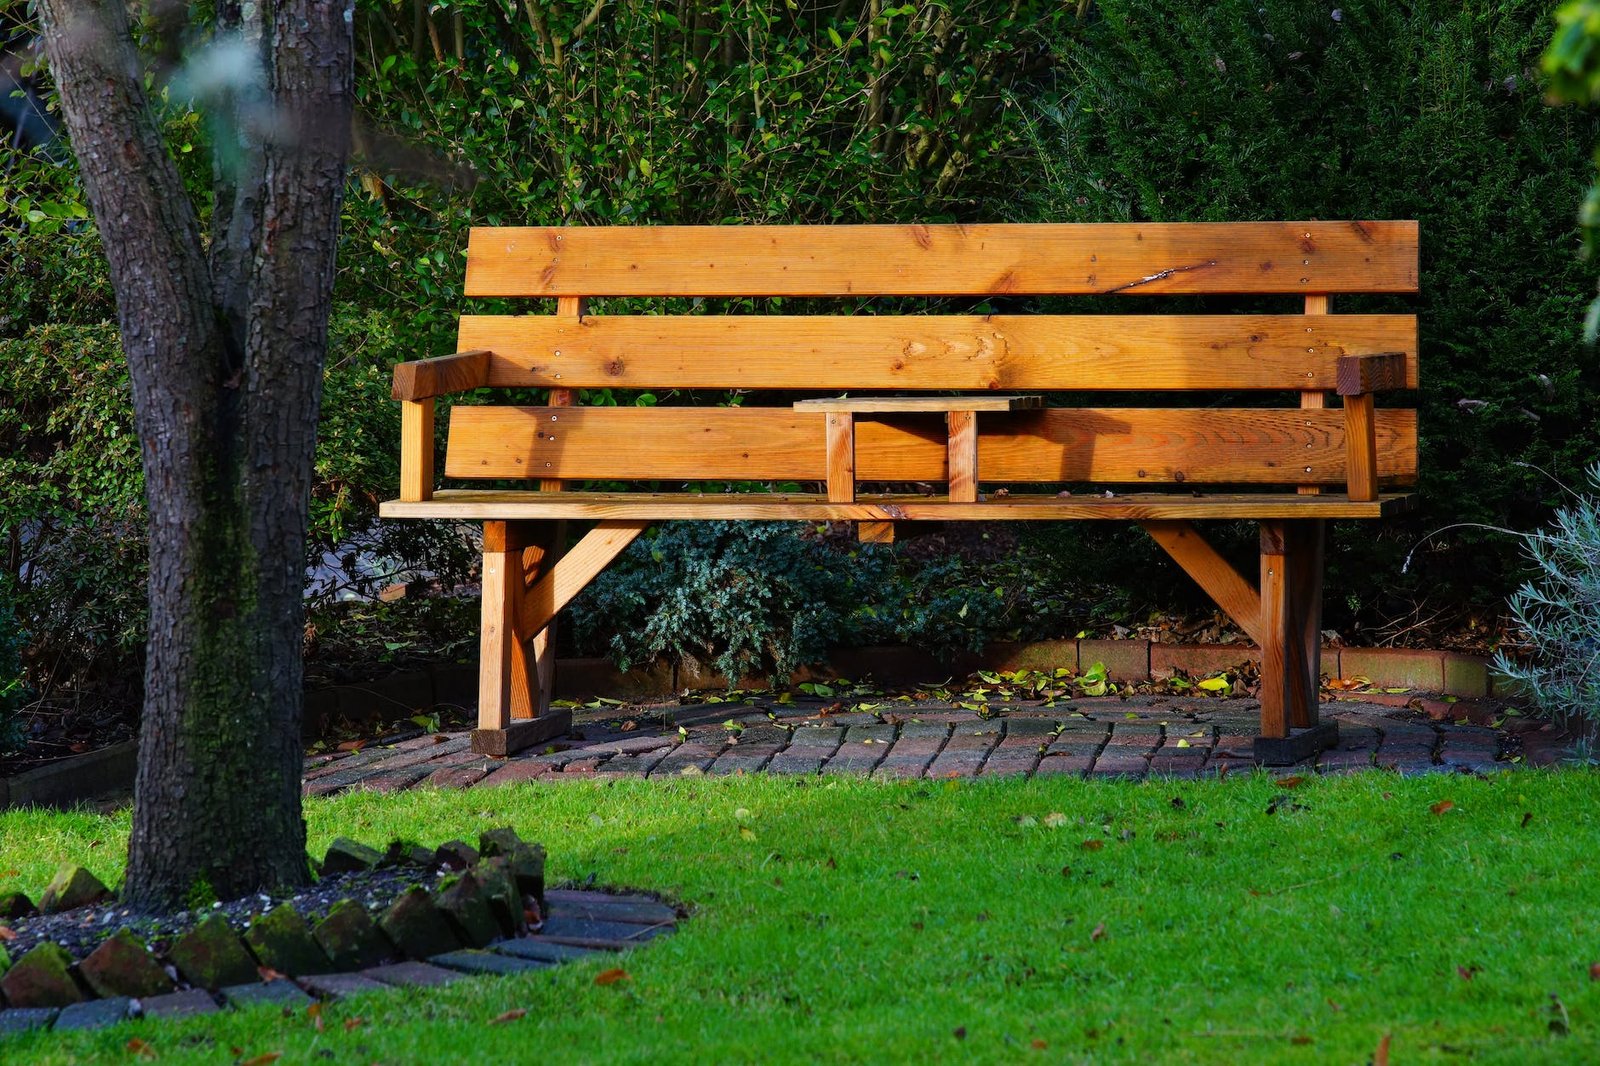 wooden bench in garden